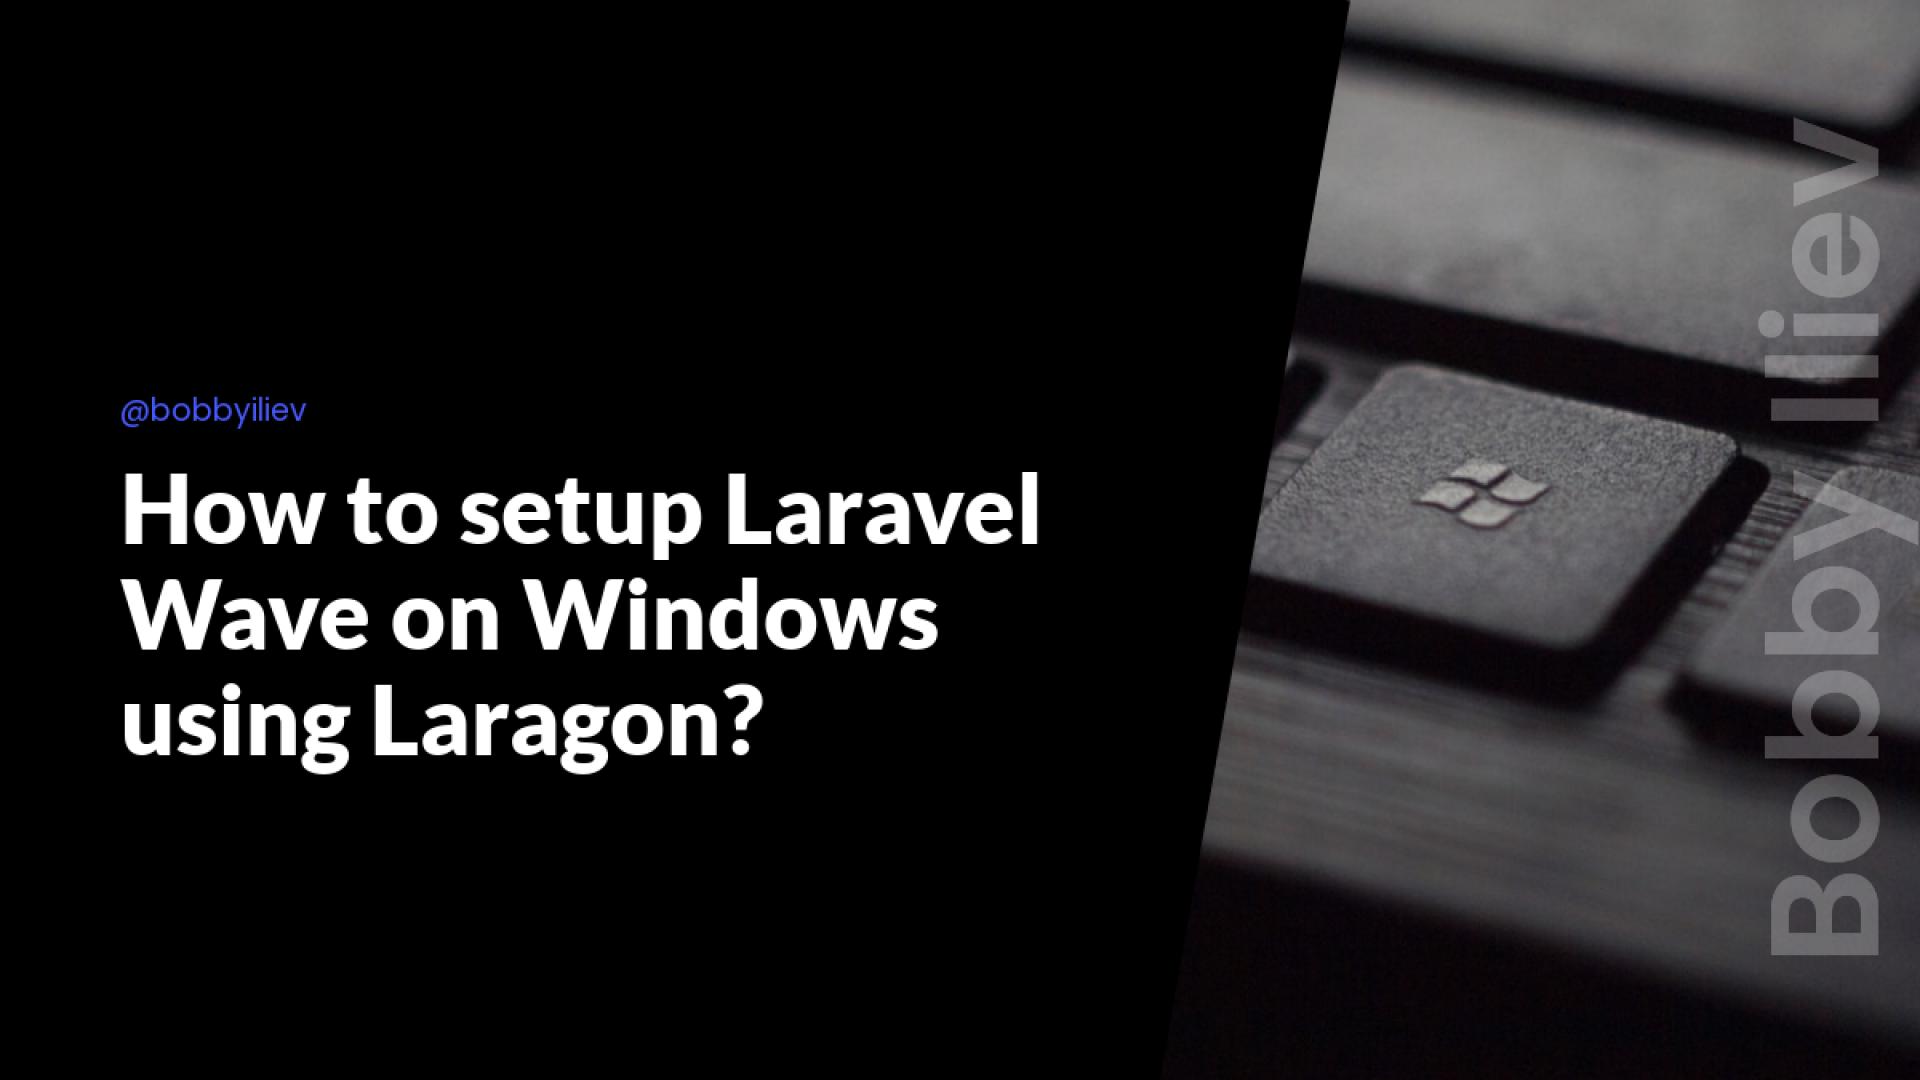 How to setup Laravel Wave on Windows using Laragon?